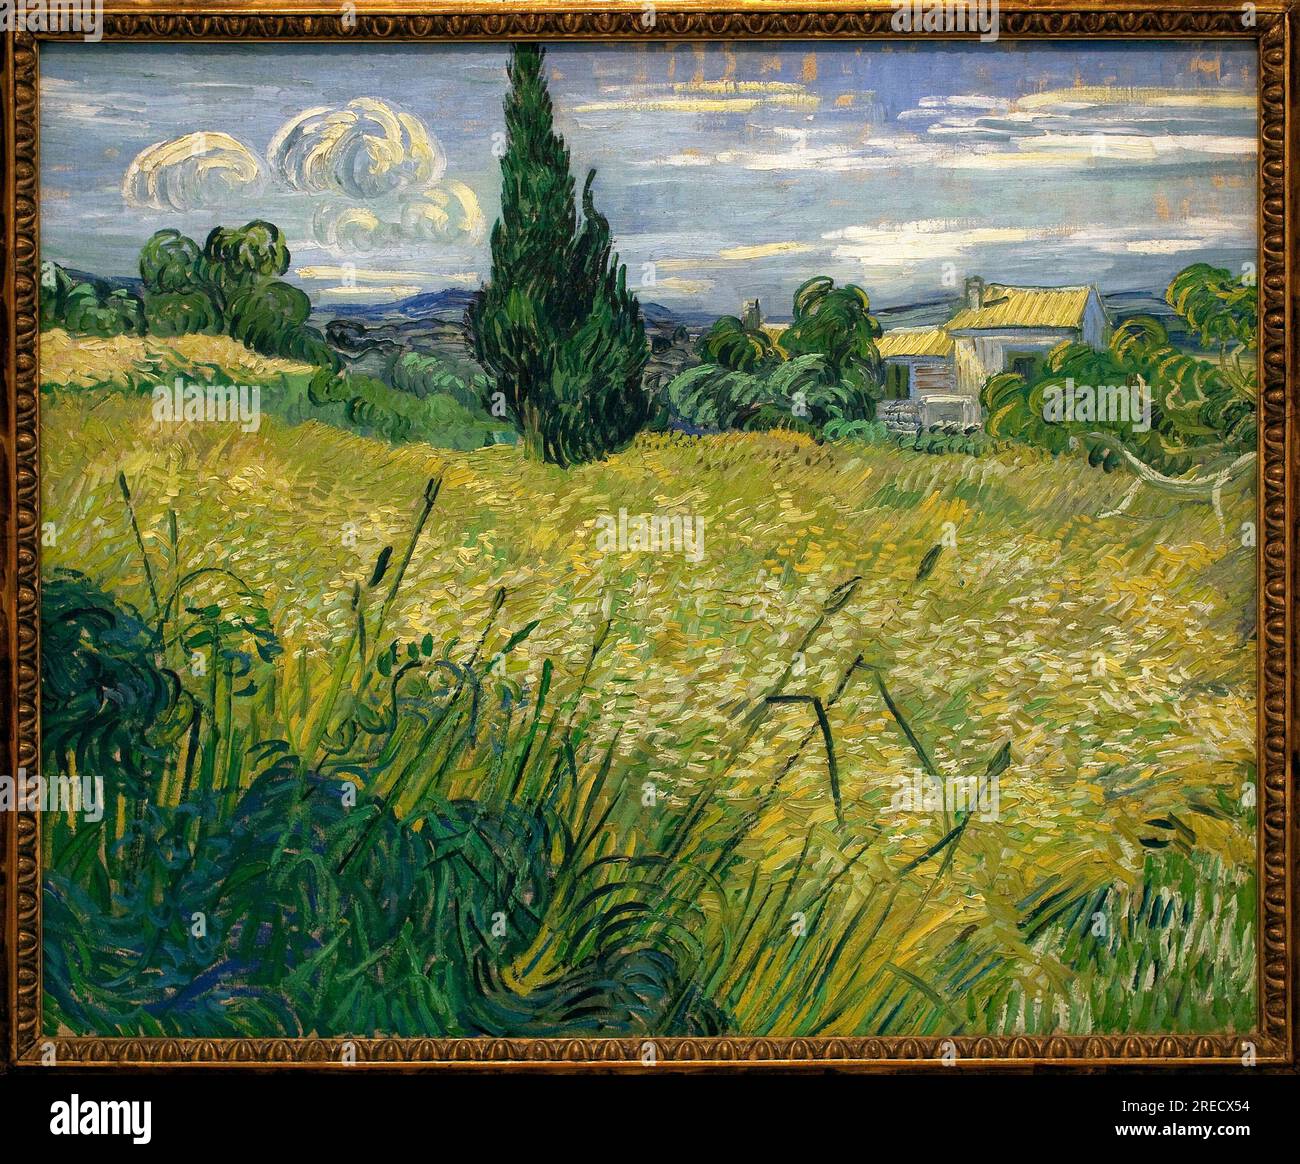 Mais vert - Peinture de Vincent Van Gogh (1853-1890), huile sur toile, 1889 - art francais, 19e siecle - Palais Veletrzni (palais des foires), Praga (Republique Tcheque) Foto Stock